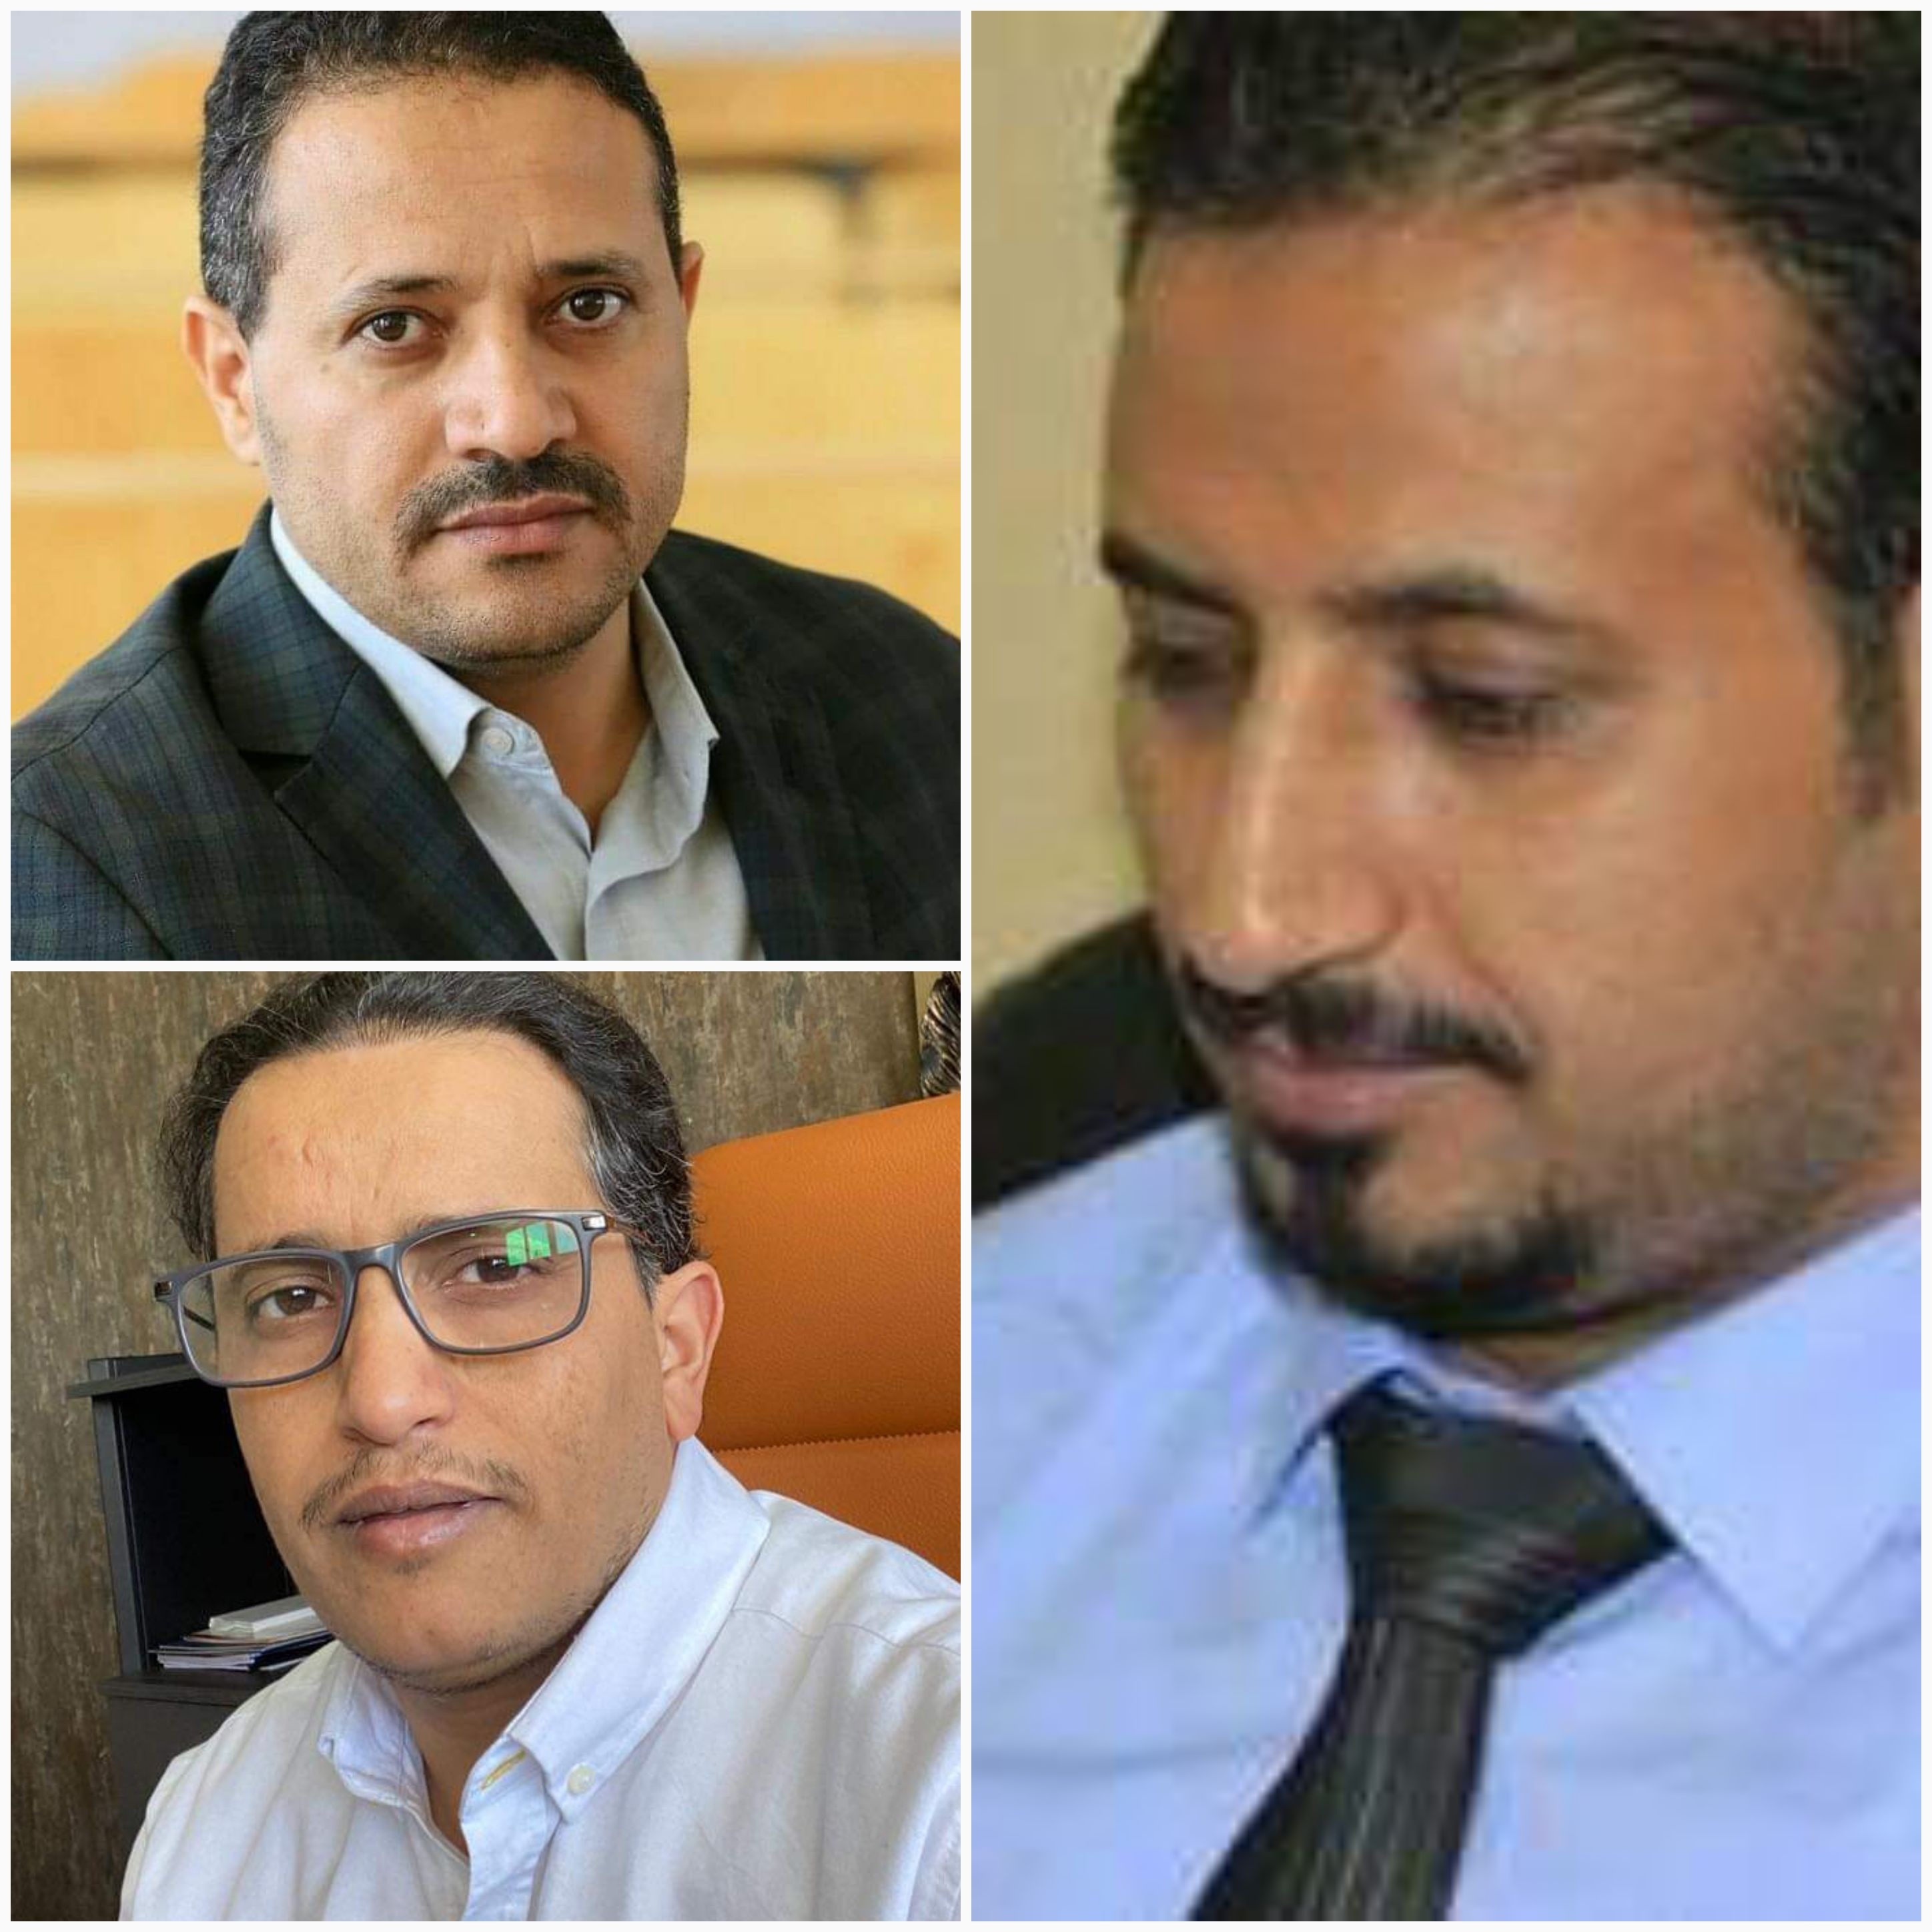 نقابة الصحفيين اليمنيين تطالب بإيقاف أوامر القبض القهرية بحق 3 صحفيين وتؤكد رفضها لاستخدام السلطة القضائية لإرهاب الصحفيين